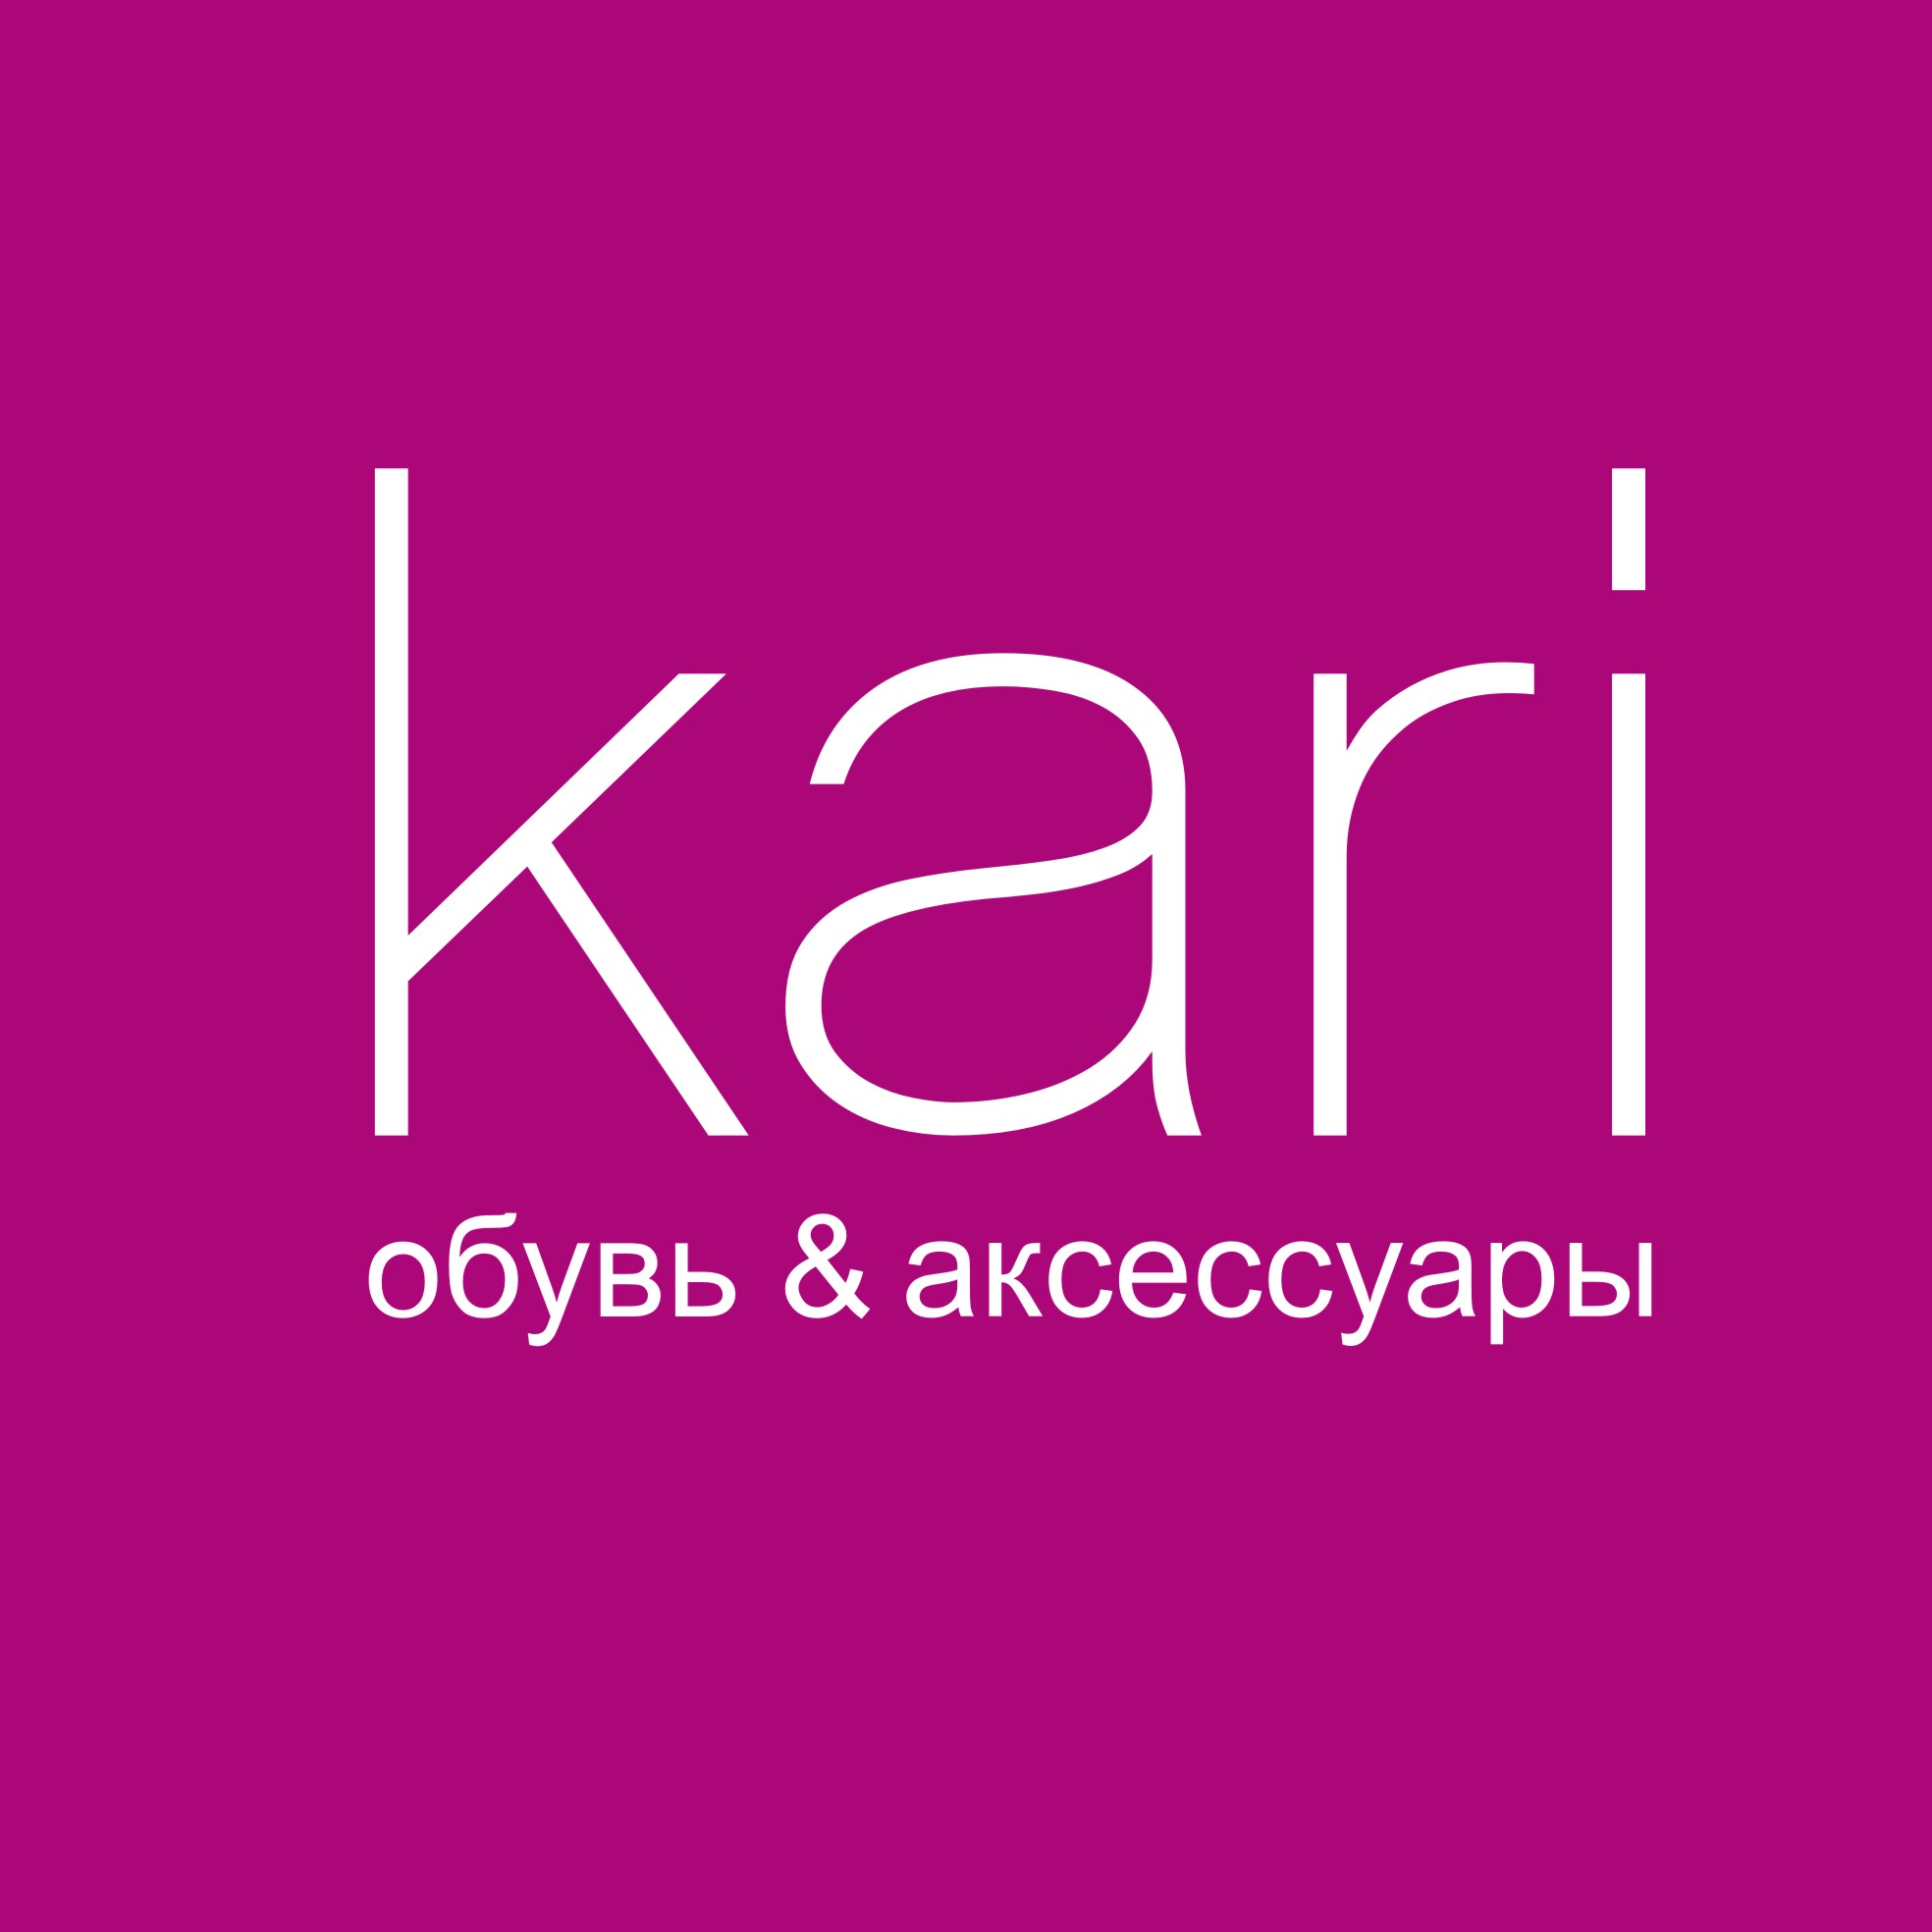 Kari. 